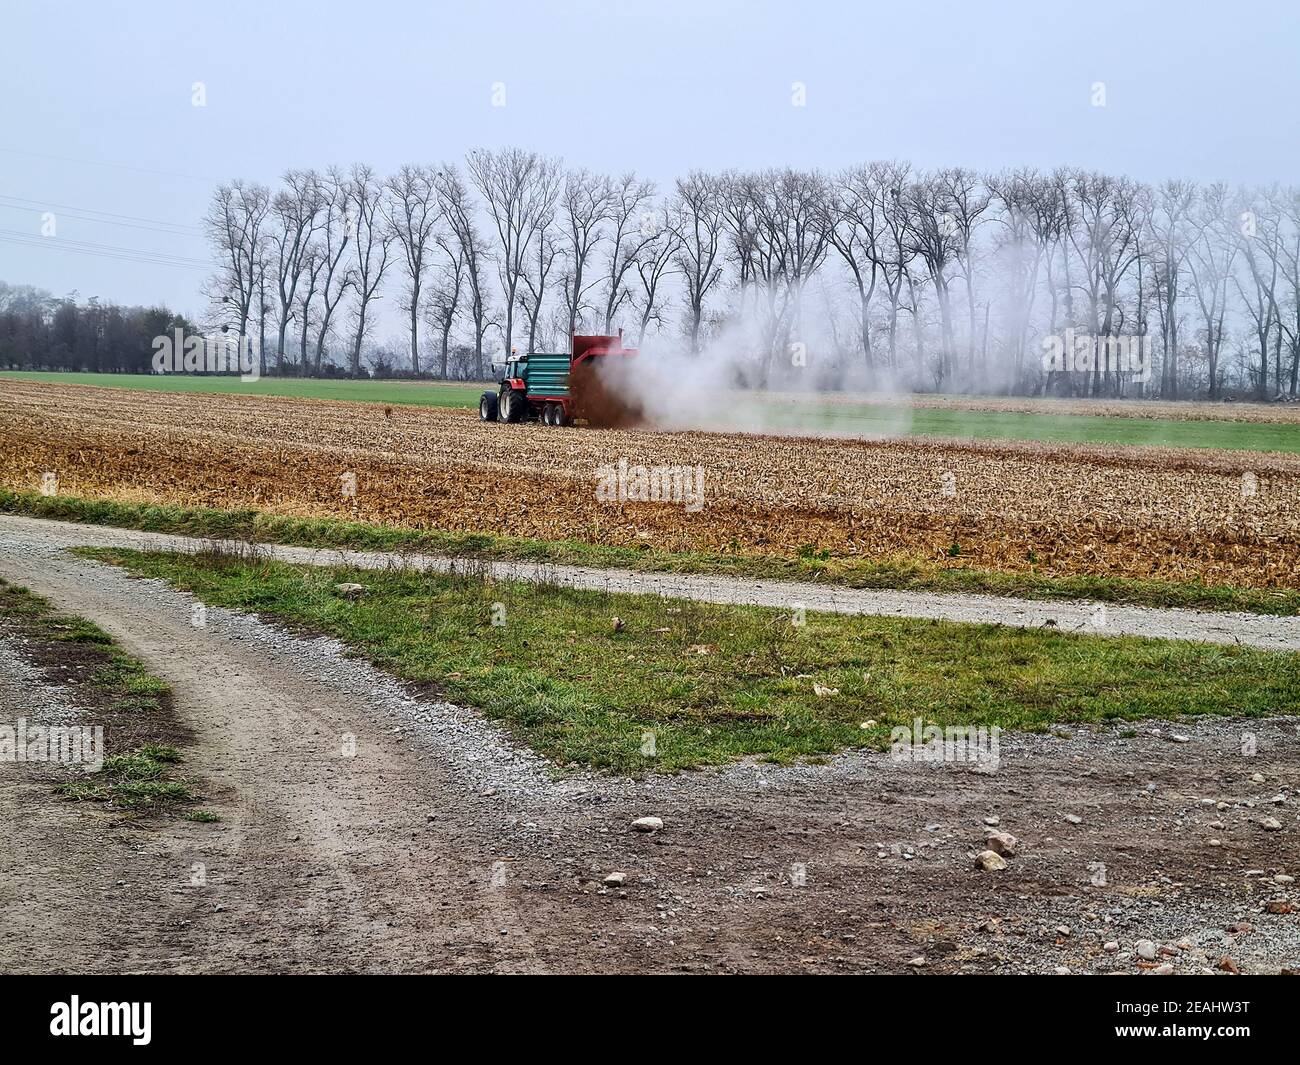 REISENBERG, ÖSTERREICH - 27. NOVEMBER 2019: Unidentifizierter Landwirt auf Traktor durch landwirtschaftliche Feldarbeit, Versprühen von Gülle auf einem Feld in Niederösterreich Stockfoto